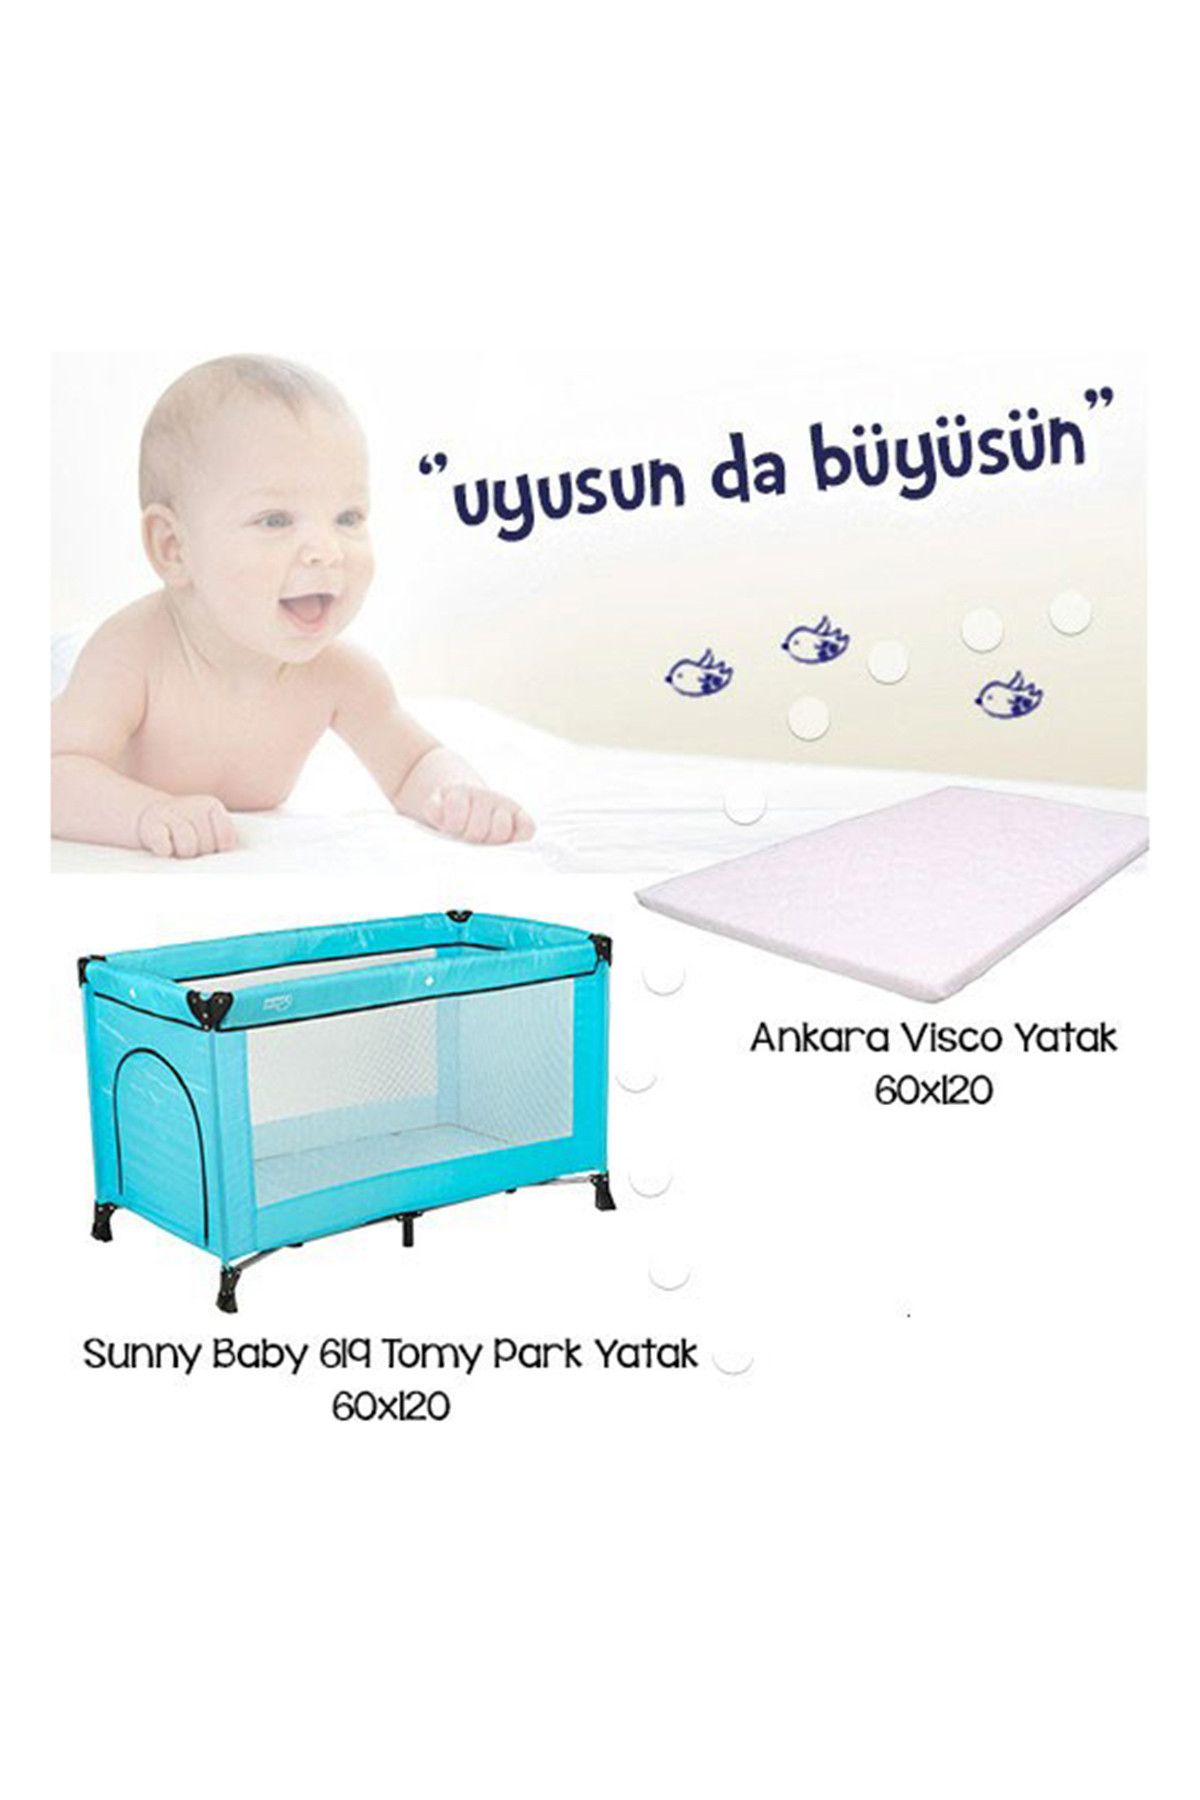 Sunny Baby 619 Tomy Park Yatak Kampanyası Mavi /